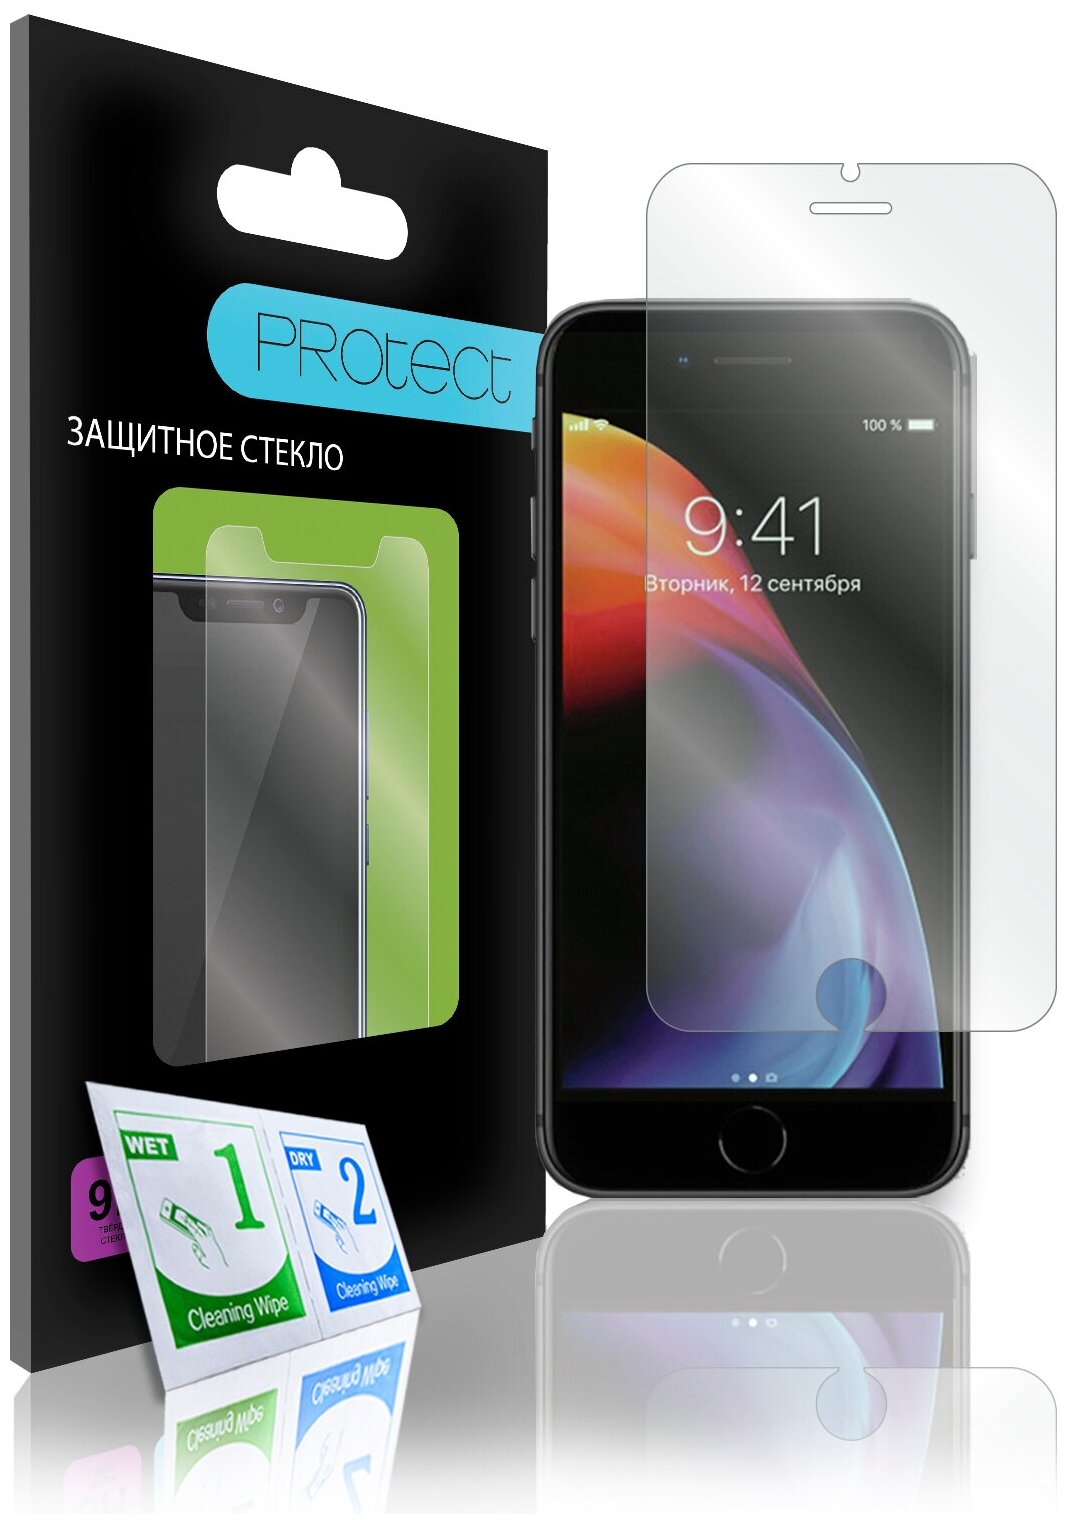 Защитное стекло PROtect для iPhone 6, 6s, 7, 7s, 8, SE 2020, на Айфон 6, 6s, 7, 7s, 8, SE 2020 На плоскую часть экрана 0,2 мм